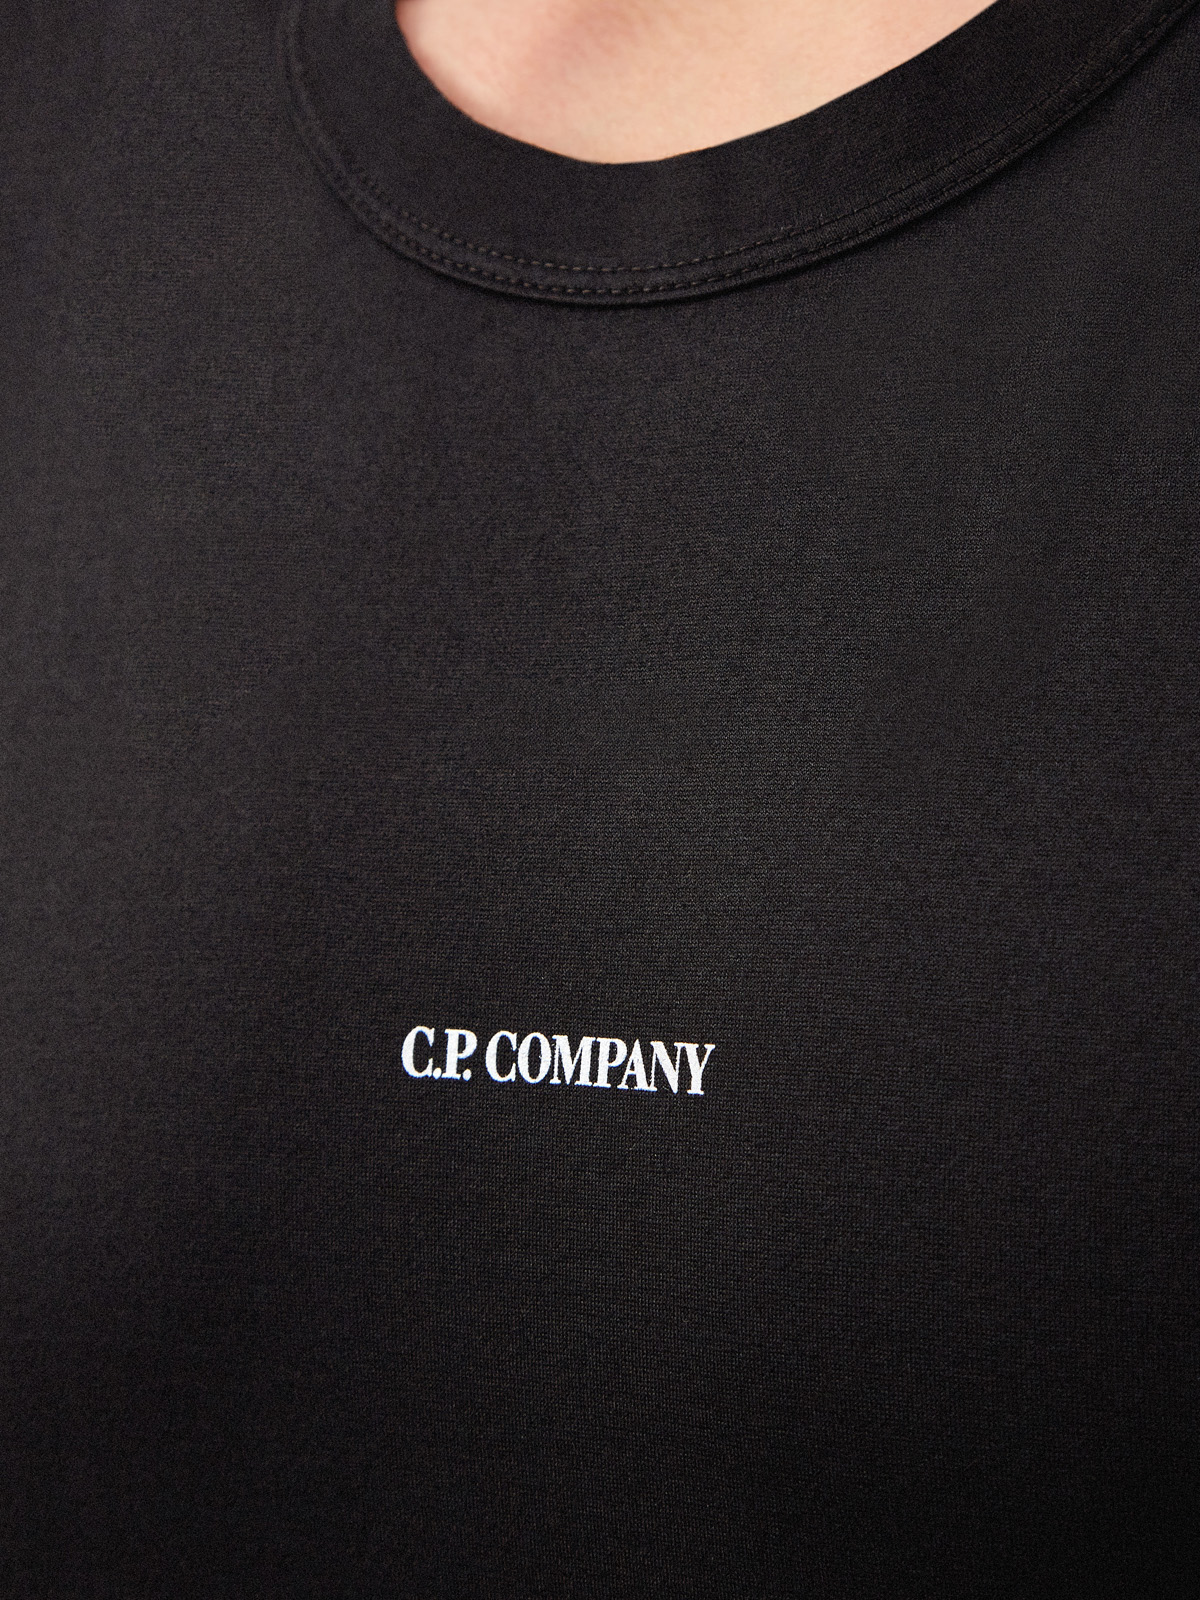 Хлопковый лонгслив из джерси с контрастным логотипом C.P.COMPANY, цвет черный, размер 48;50;52;54 - фото 5